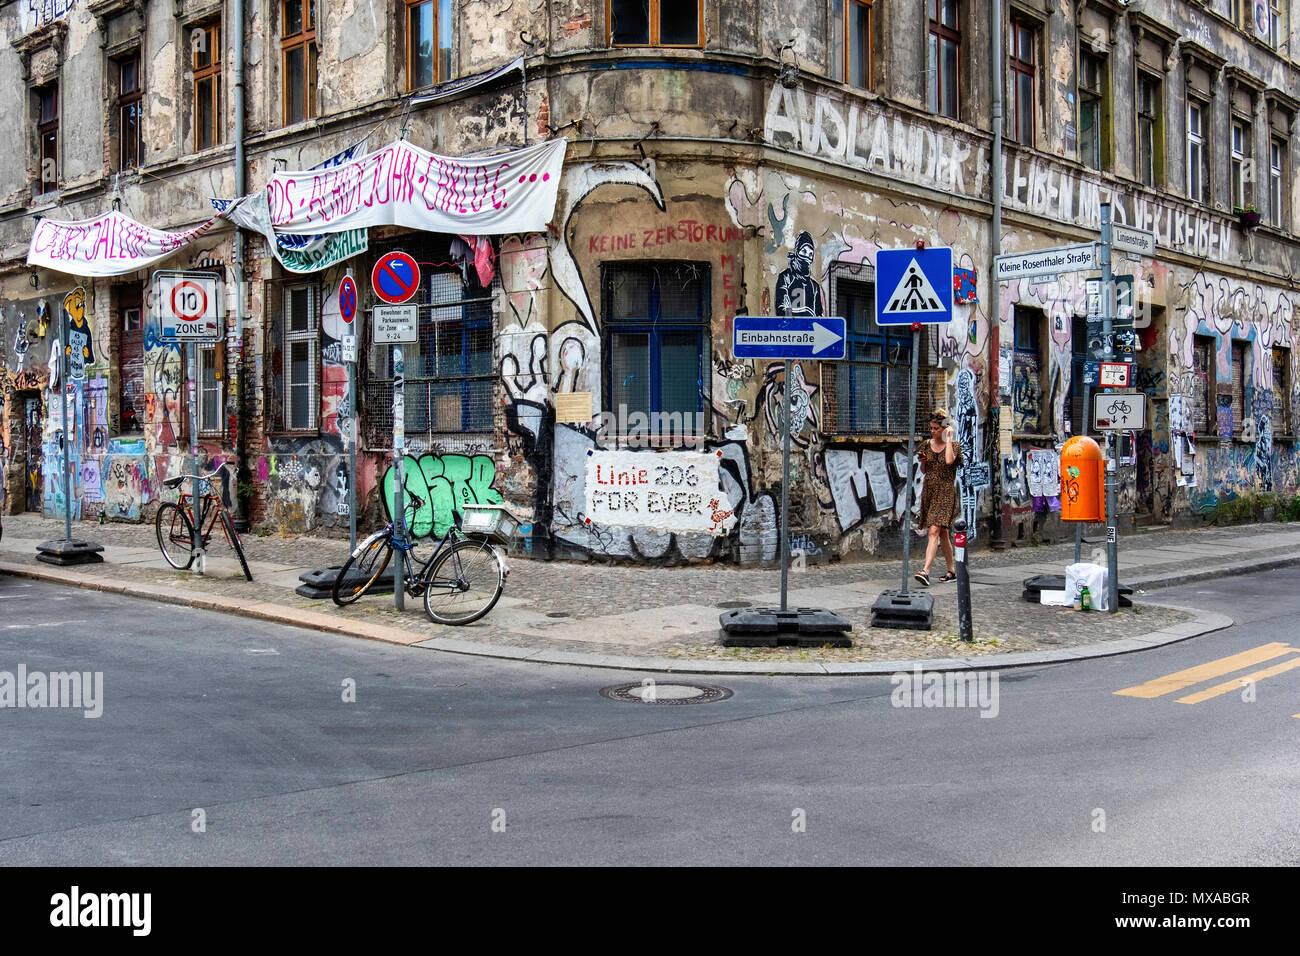 Berlin Mitte, Linienstraße 206. Verfallene Squat Gebäude mit Graffiti, Street Art und Spruchbändern bedeckt. Linie 206 für immer. Stockfoto